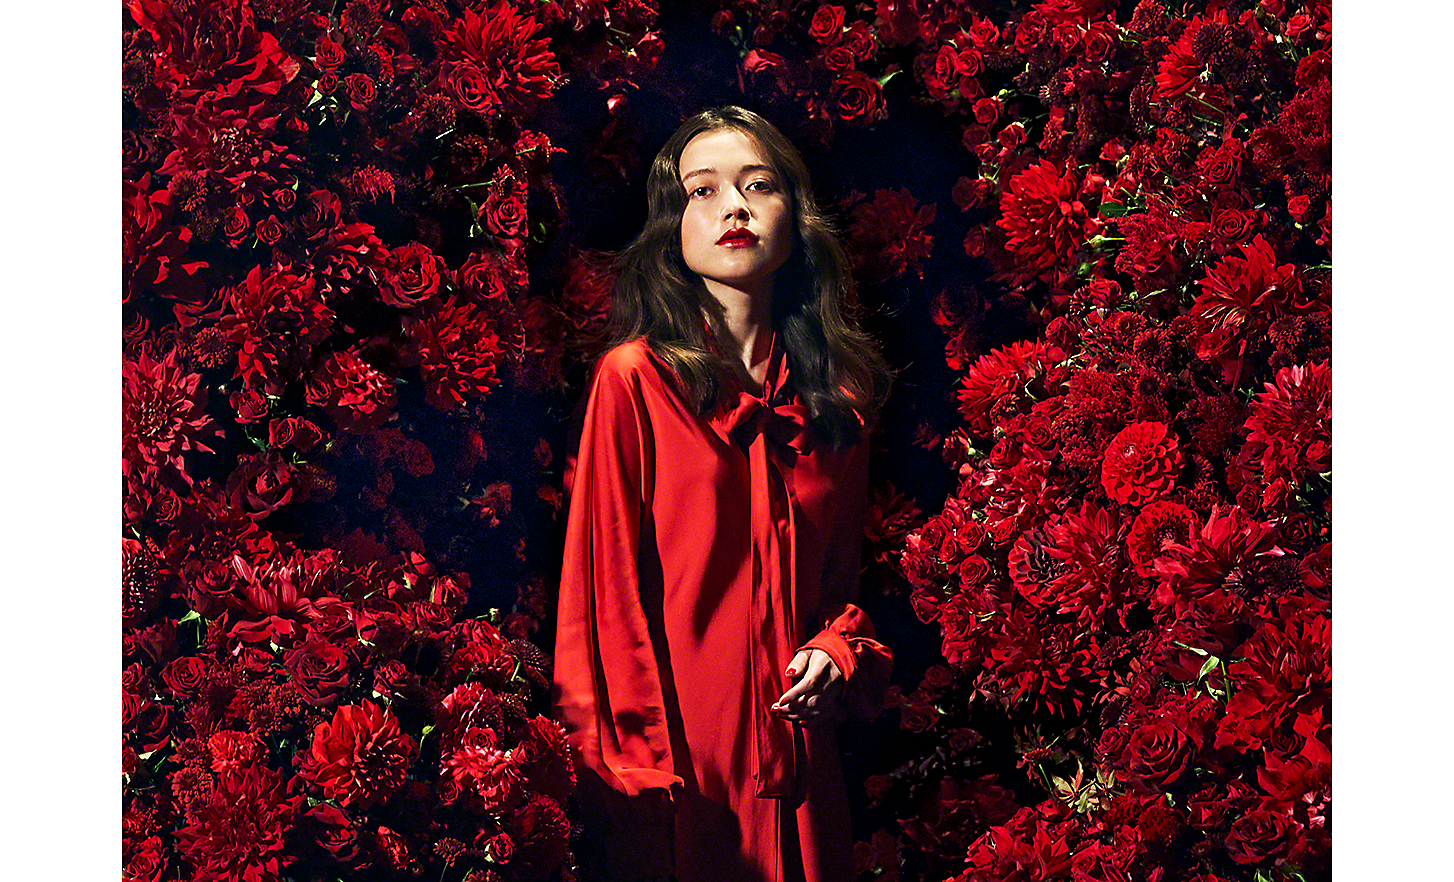 Fotografie realizată folosind distanța focală de 100 mm cu o femeie îmbrăcată în roșu înconjurată de flori roșii